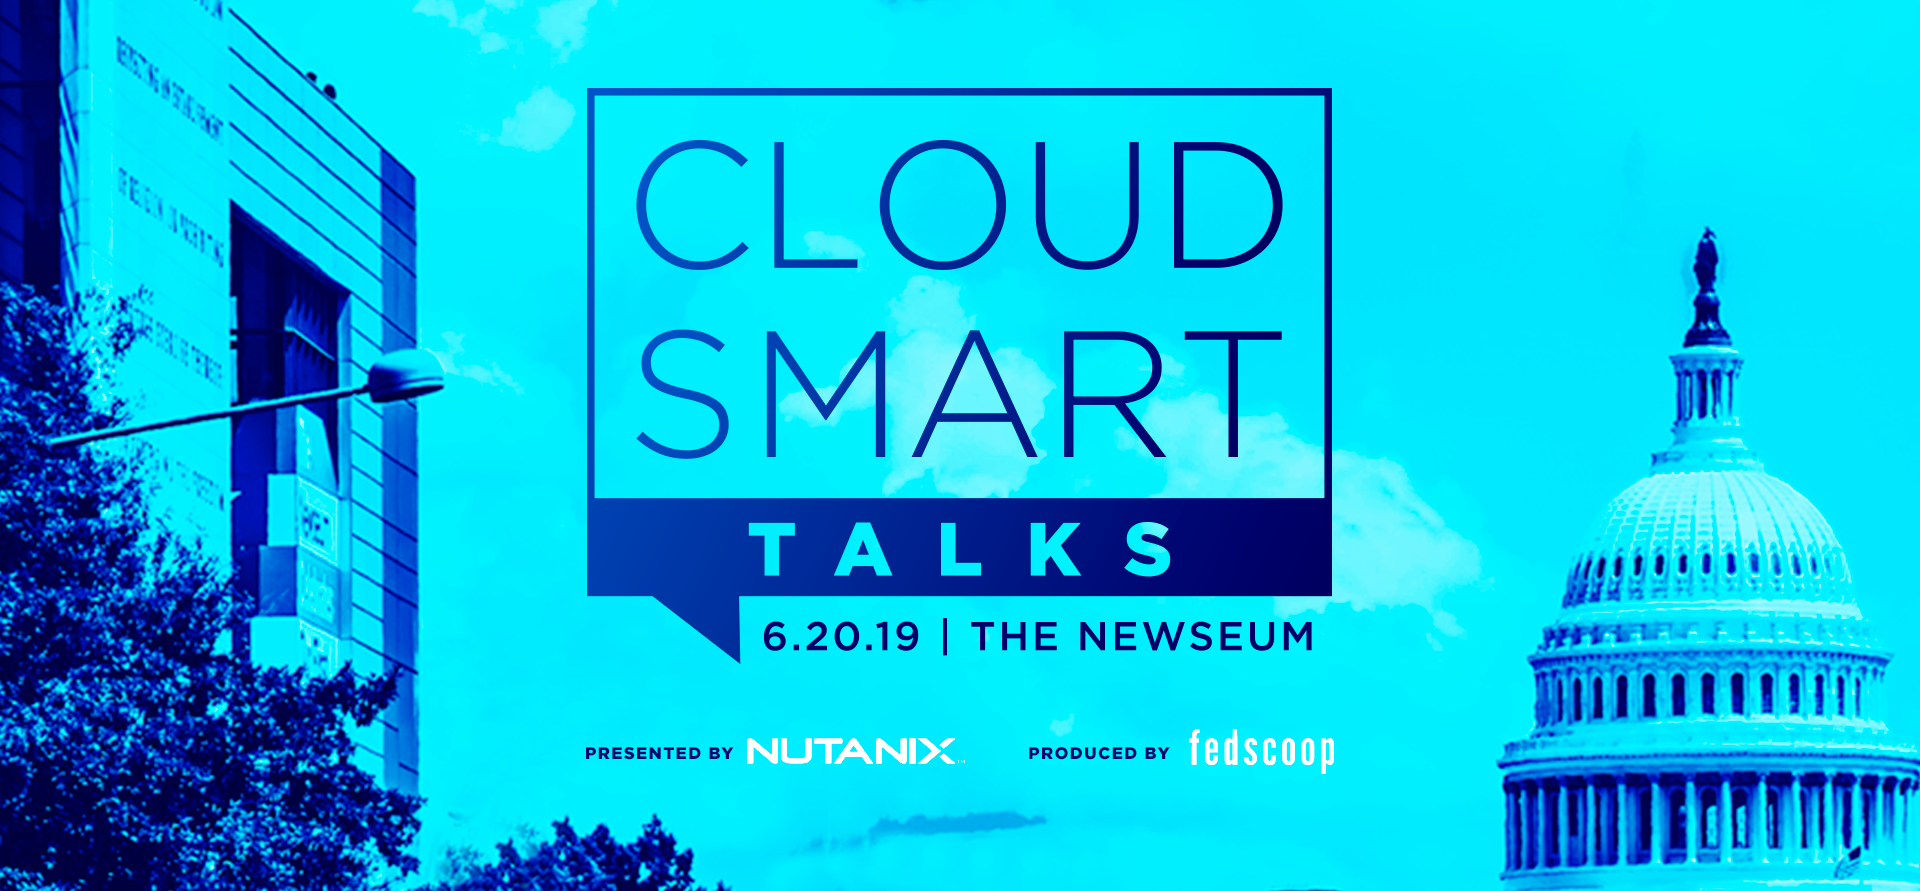 Cloud Smart Talks 06.20.19 produced by FedScoop